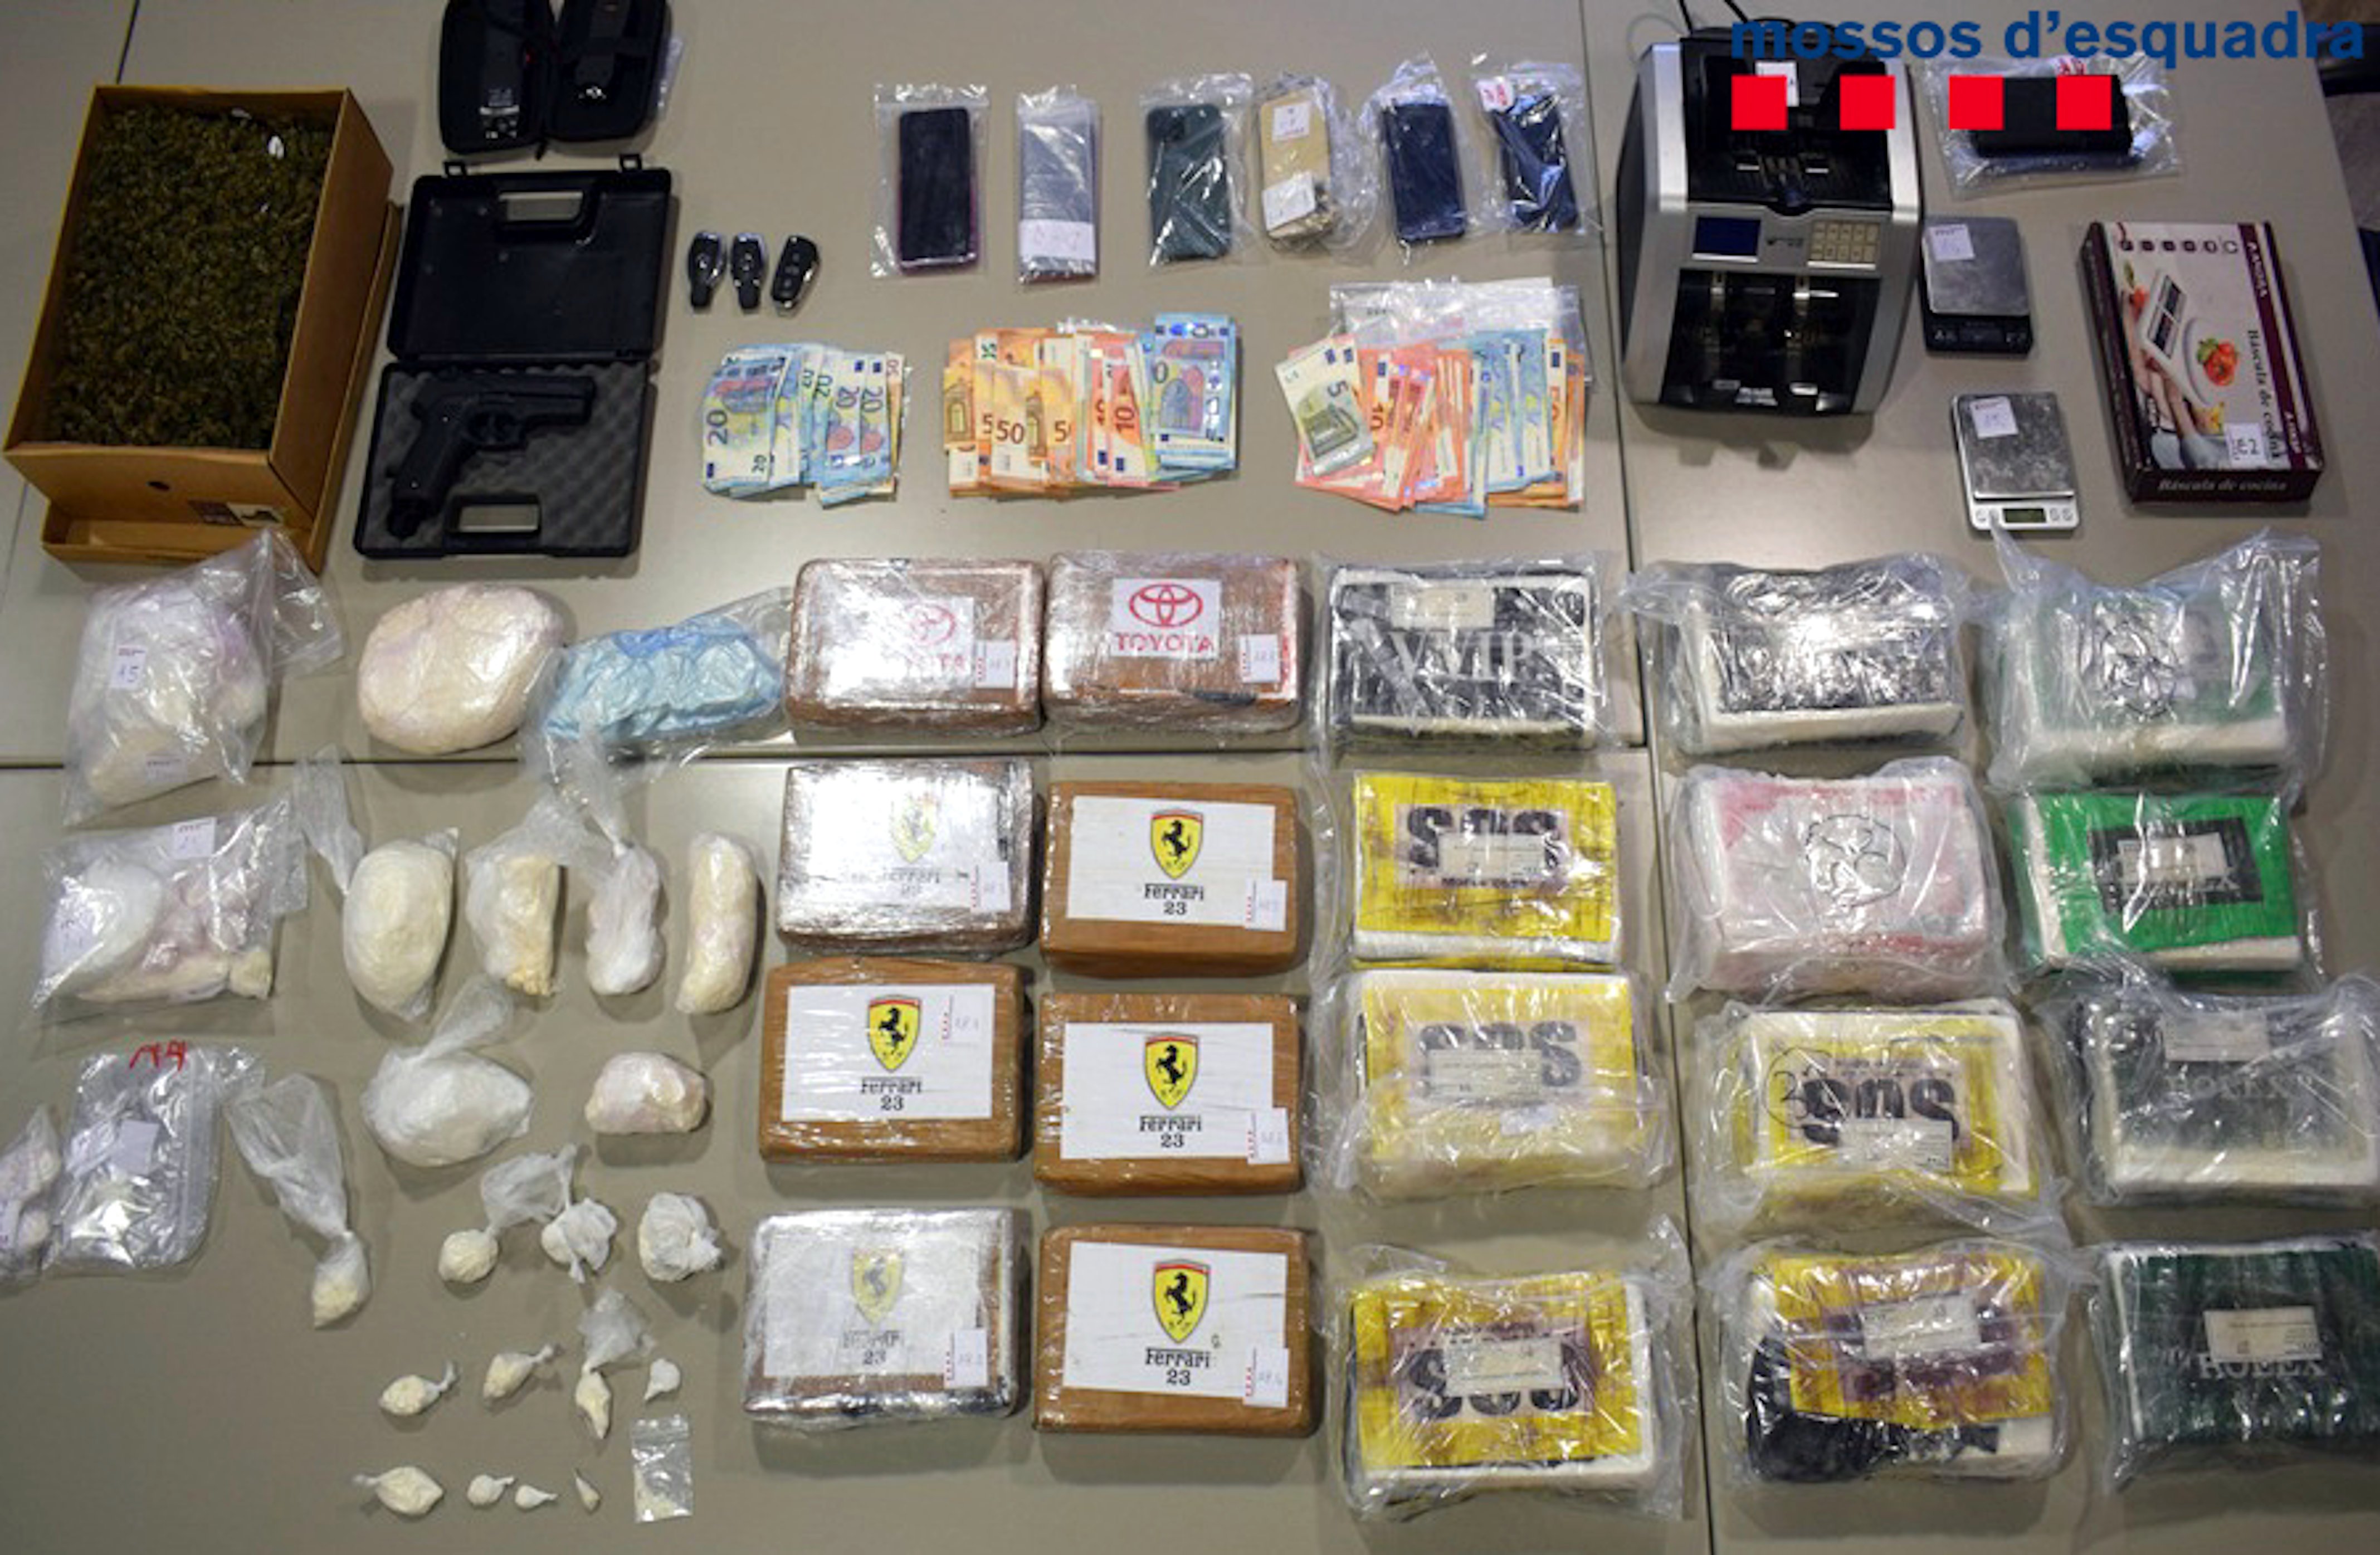 Paquets de cocaïna, telèfons mòbils, diners i armes decomissats als narcotraficants del Bages / CME